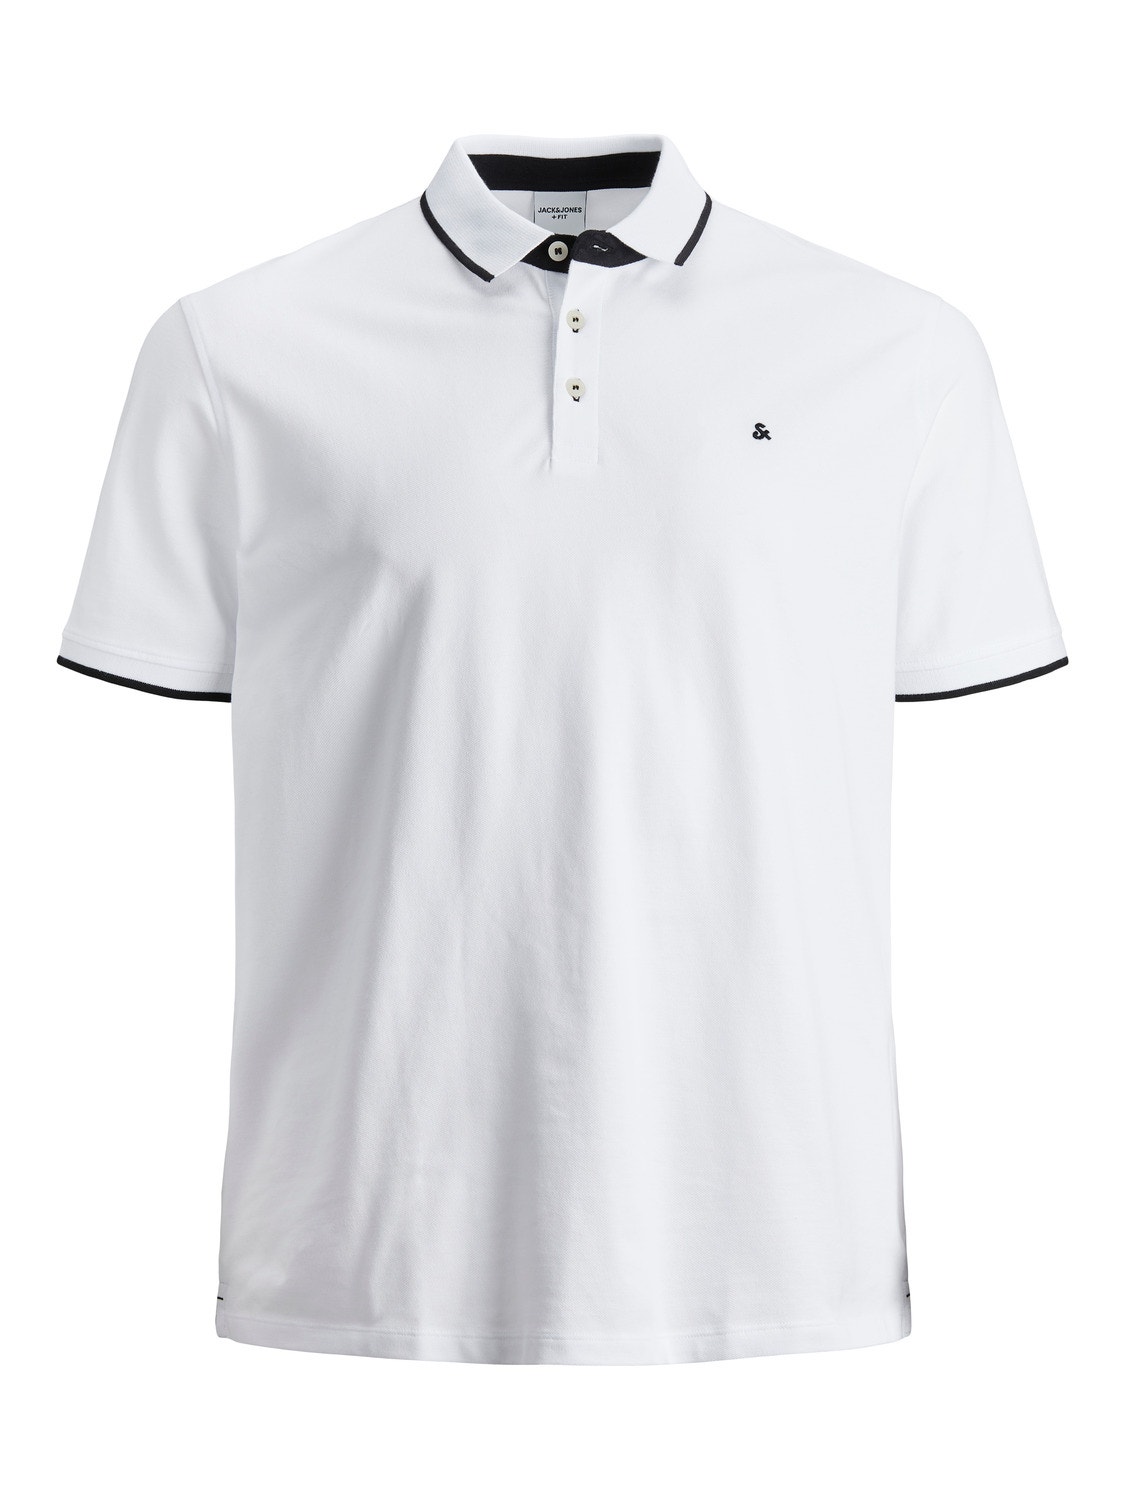 Jack & Jones Plus Size Vienspalvis Marškinėliai -White - 12143859